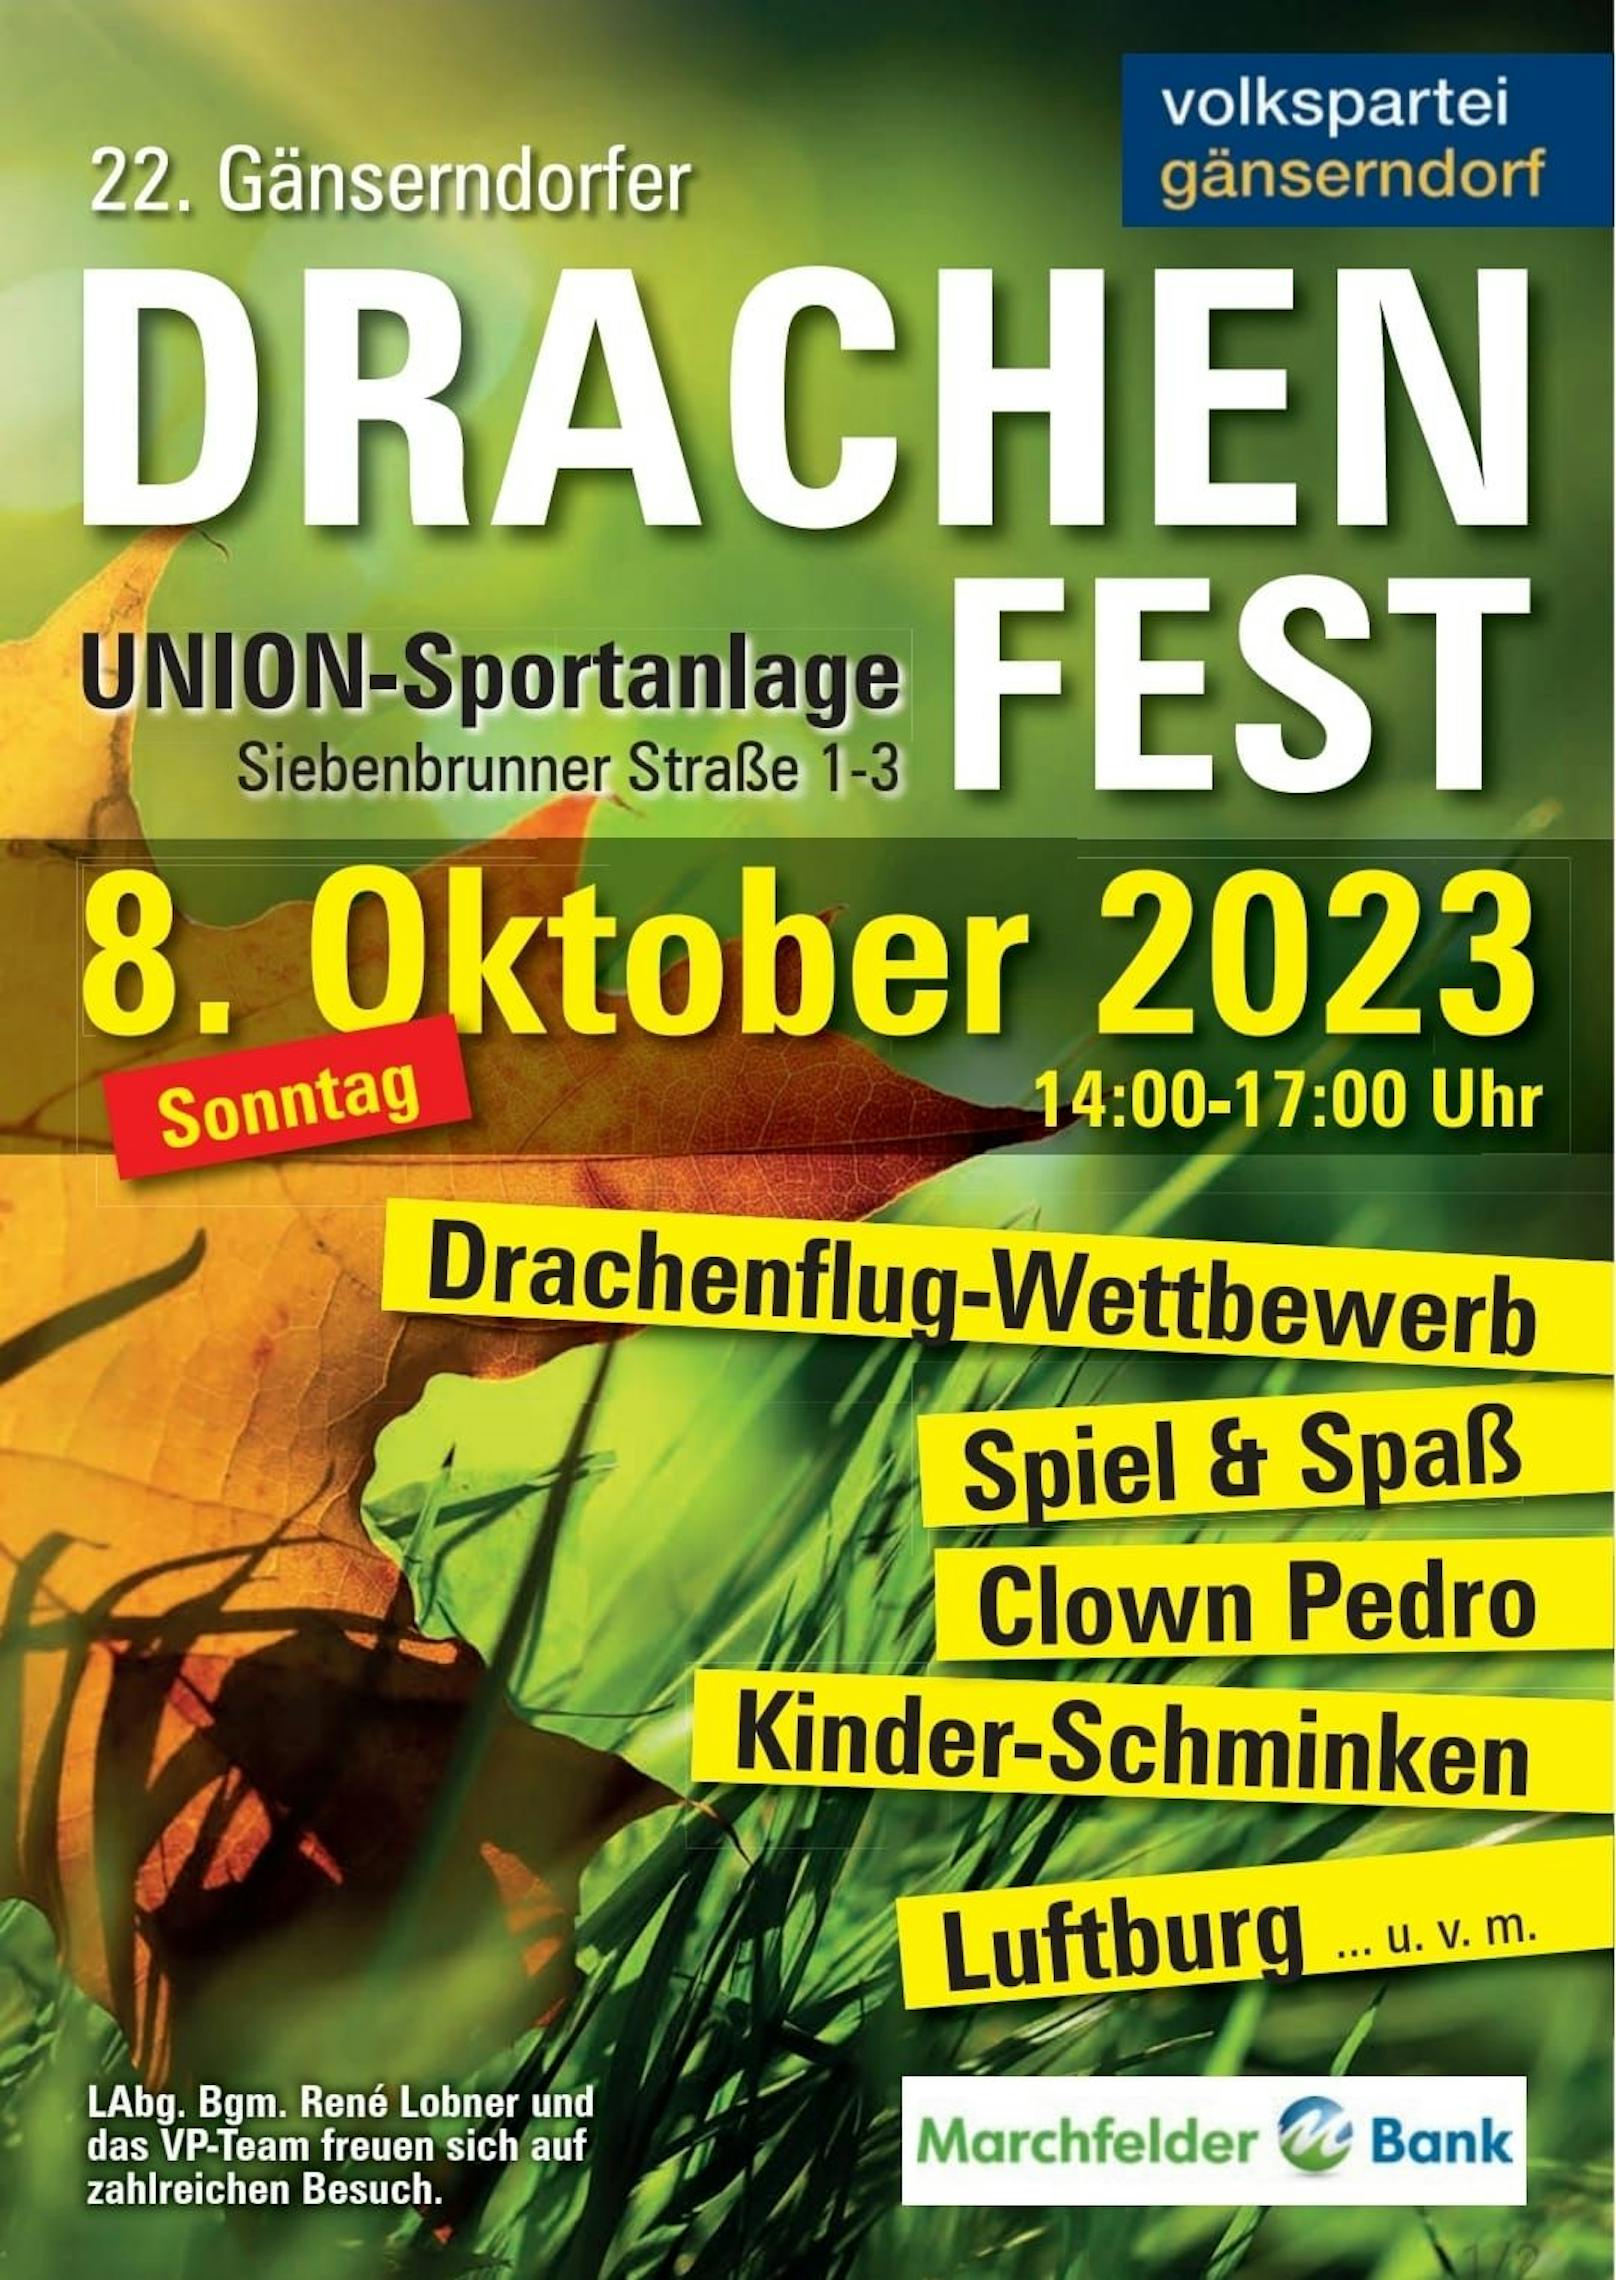 Die ÖVP Gänserndorf veranstaltete das traditionelle Drachenfest.